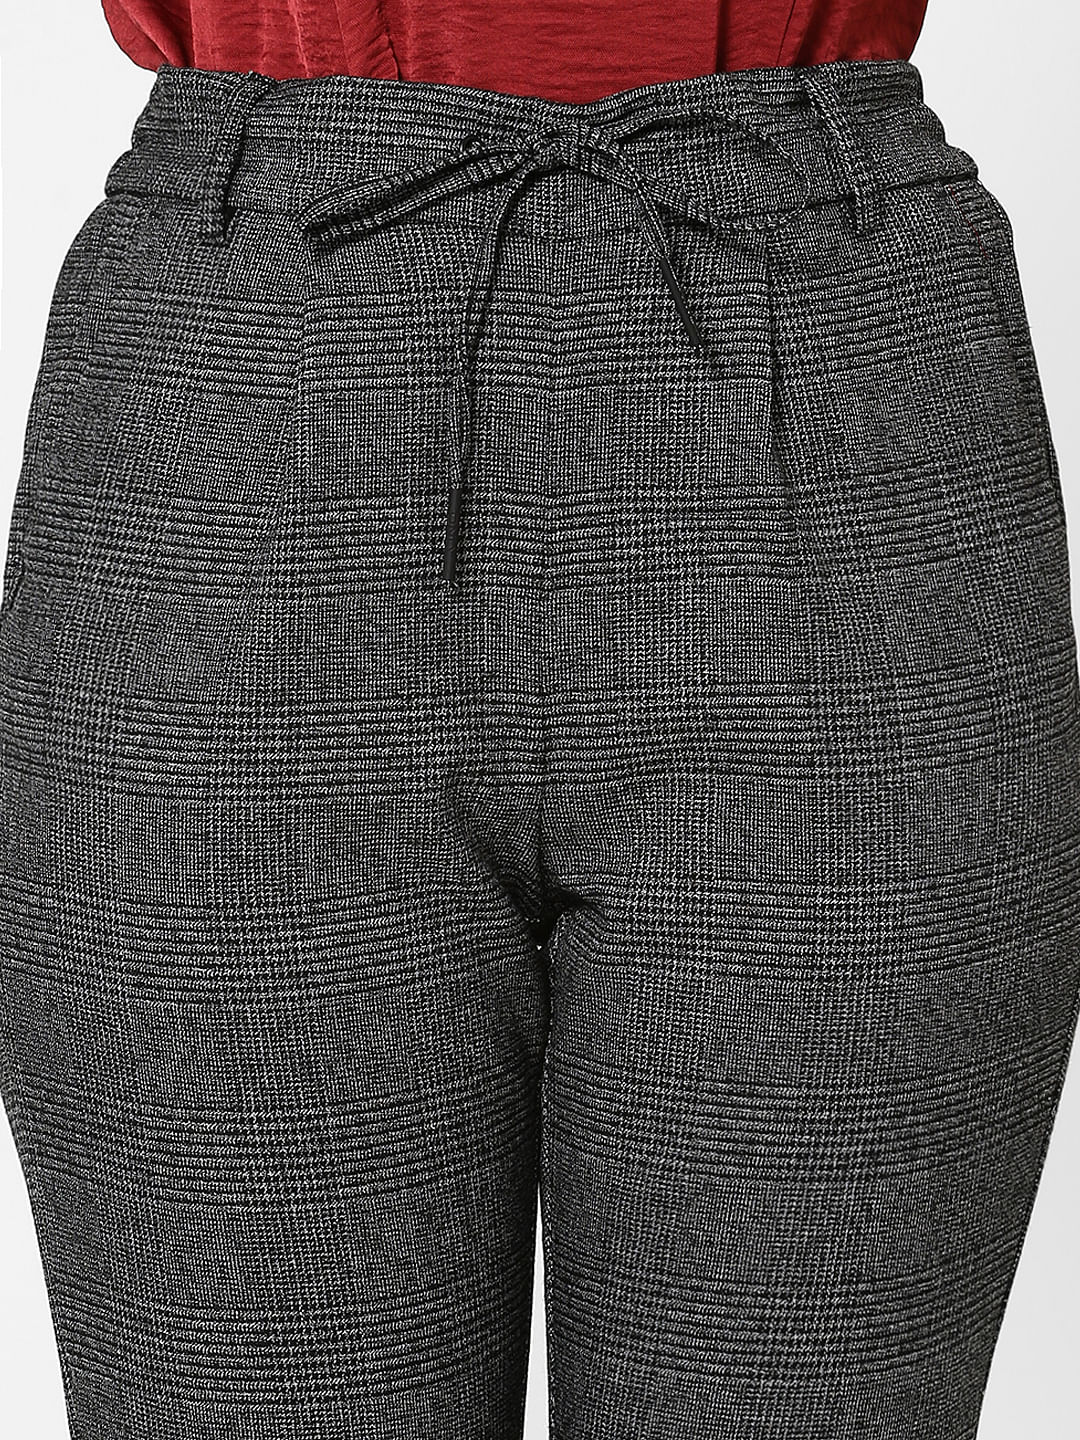 Rajsons Enterprises Casual Wear Mens Black Cotton Check Trouser Size 2840